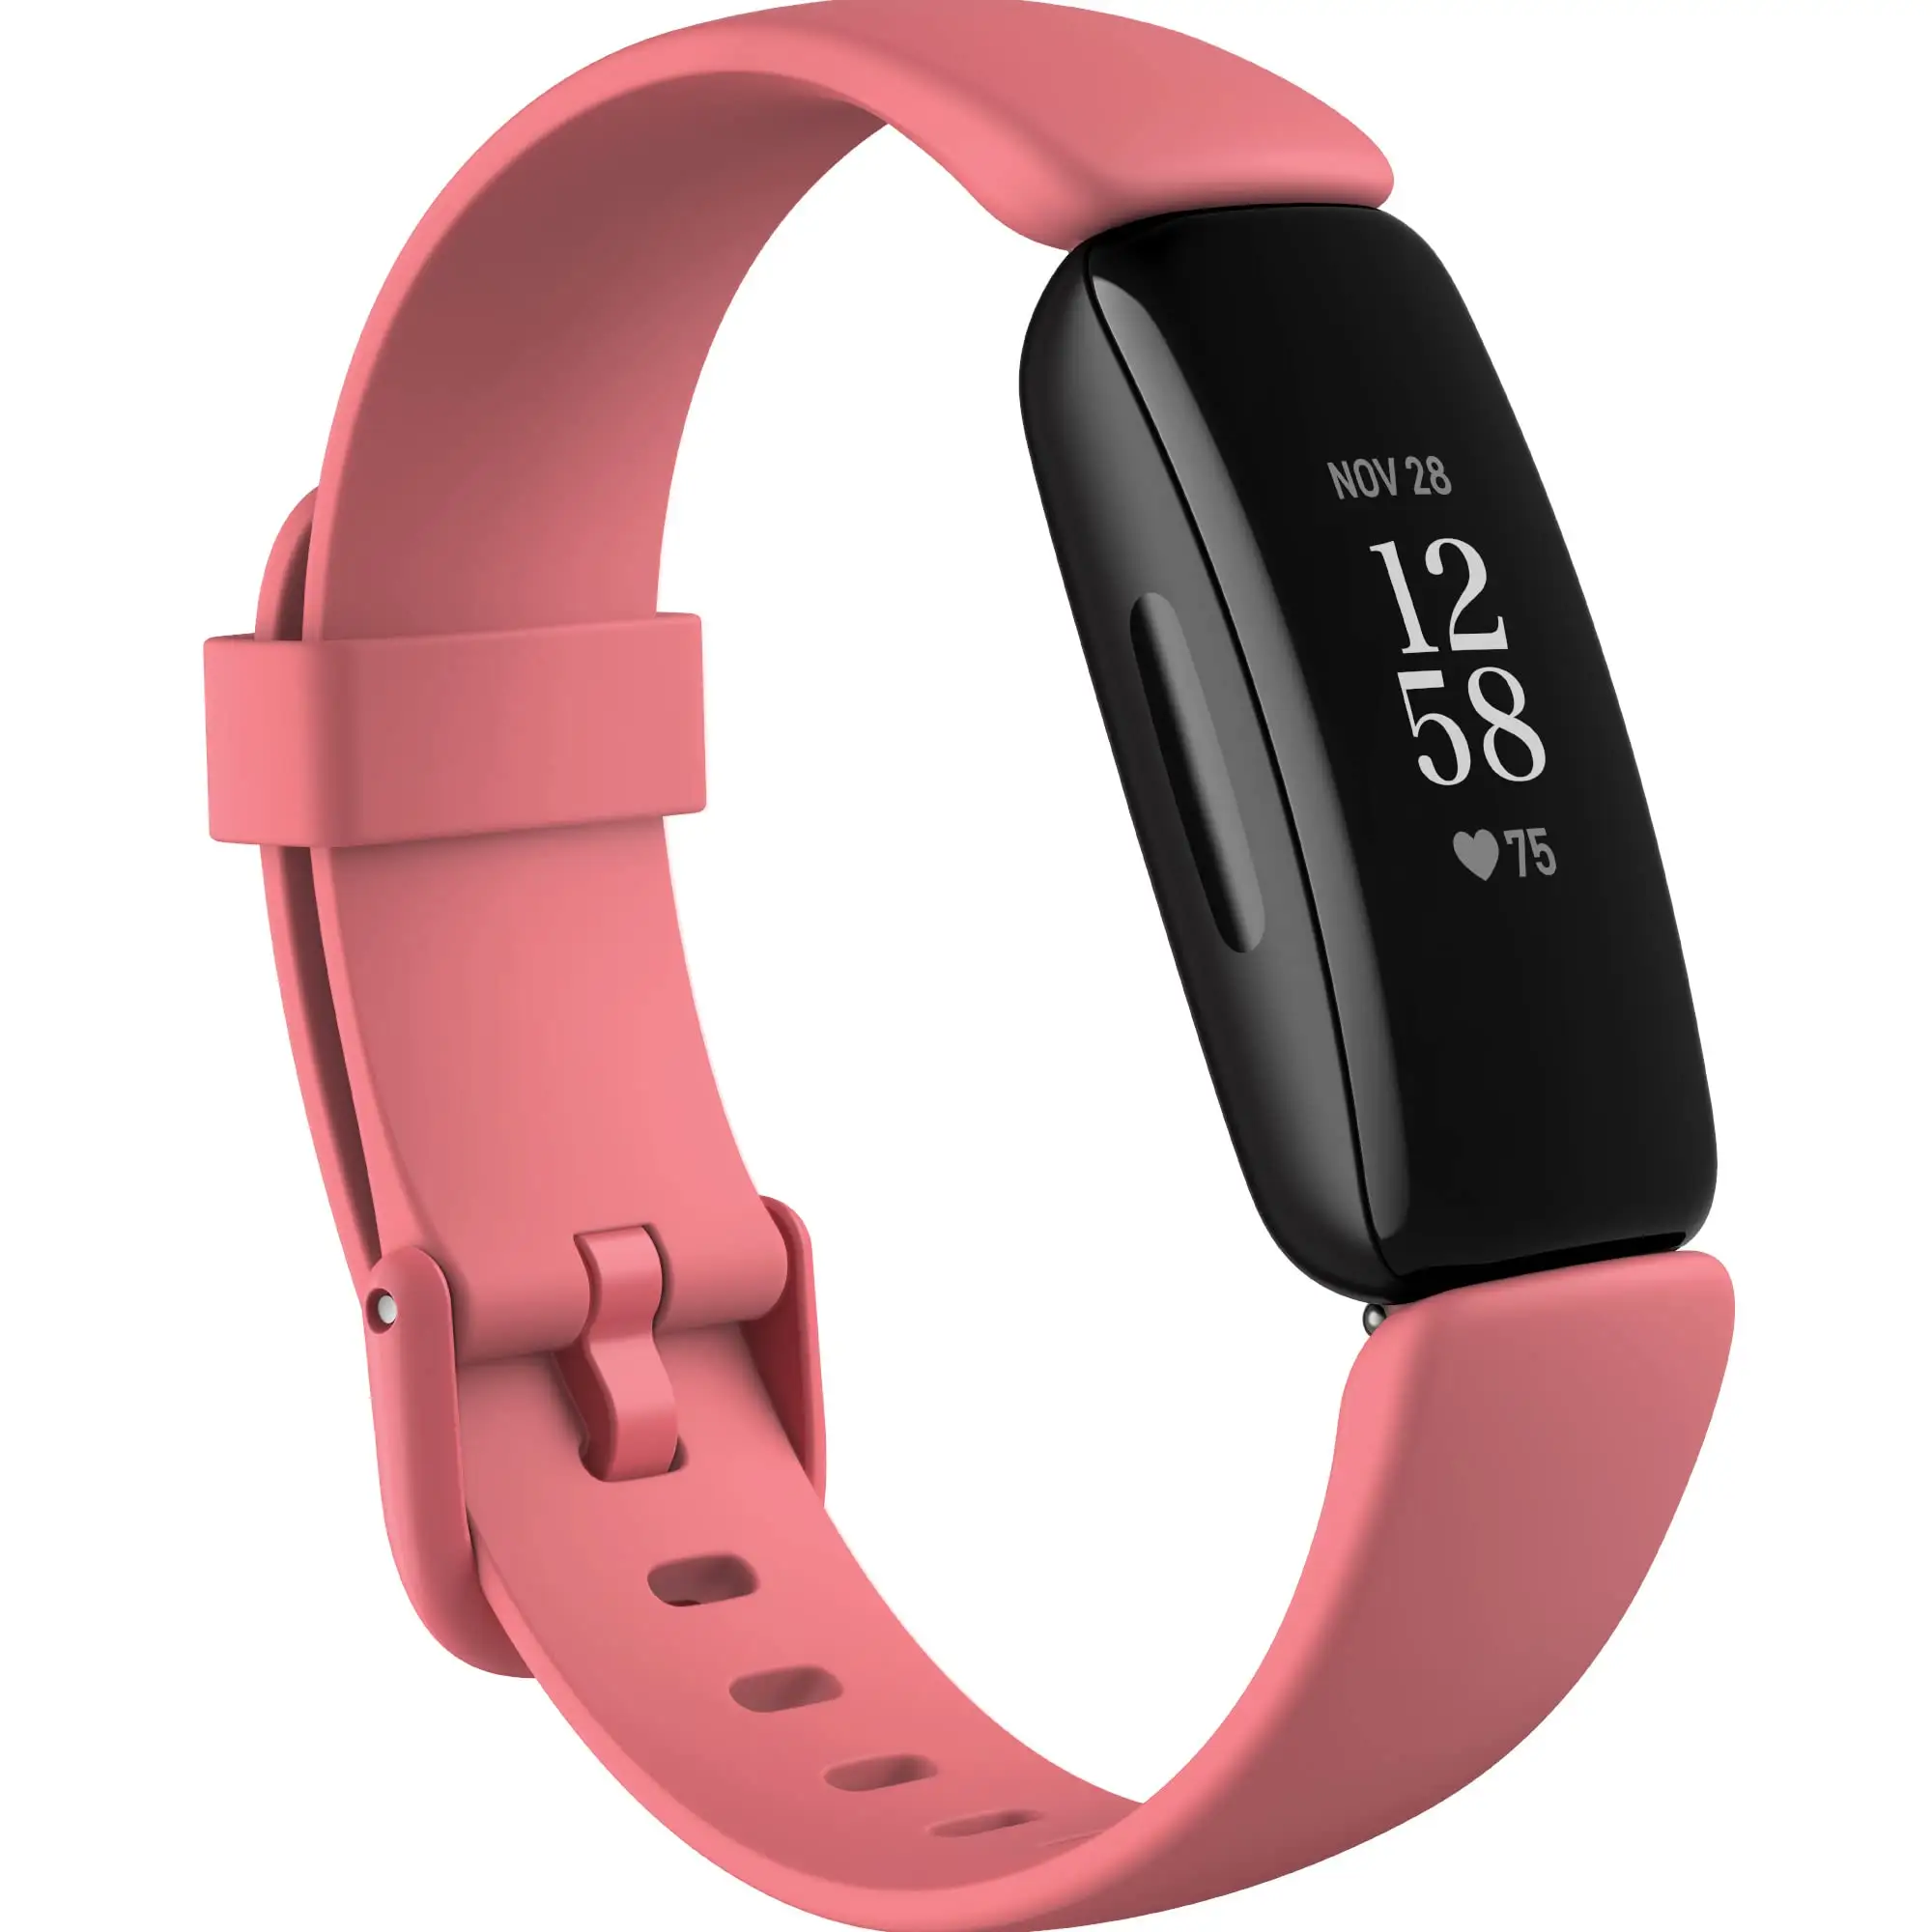 फिटबिट इंस्पायर 2 स्वास्थ्य और फिटनेस ट्रैकर्स के लिए स्मार्टवॉच सहायक उपकरण, पुरुषों के लिए स्मार्ट घड़ी